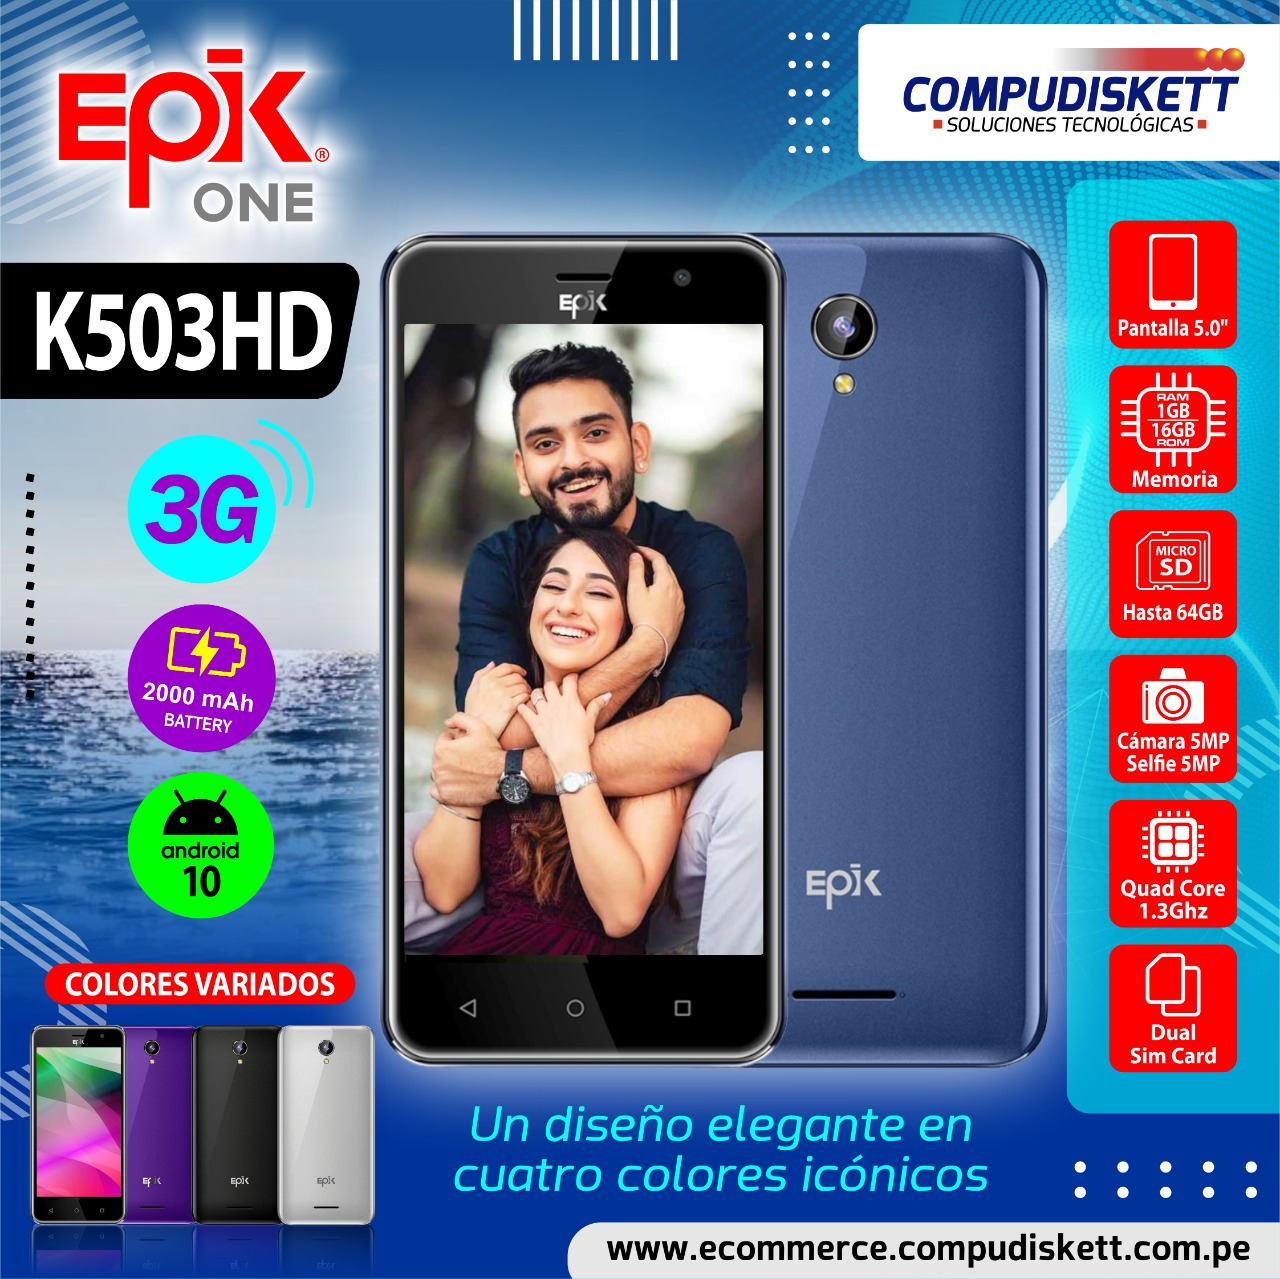 CELULAR EPIK K503HD 5.0", 1/16 GB, 3G, BLUE